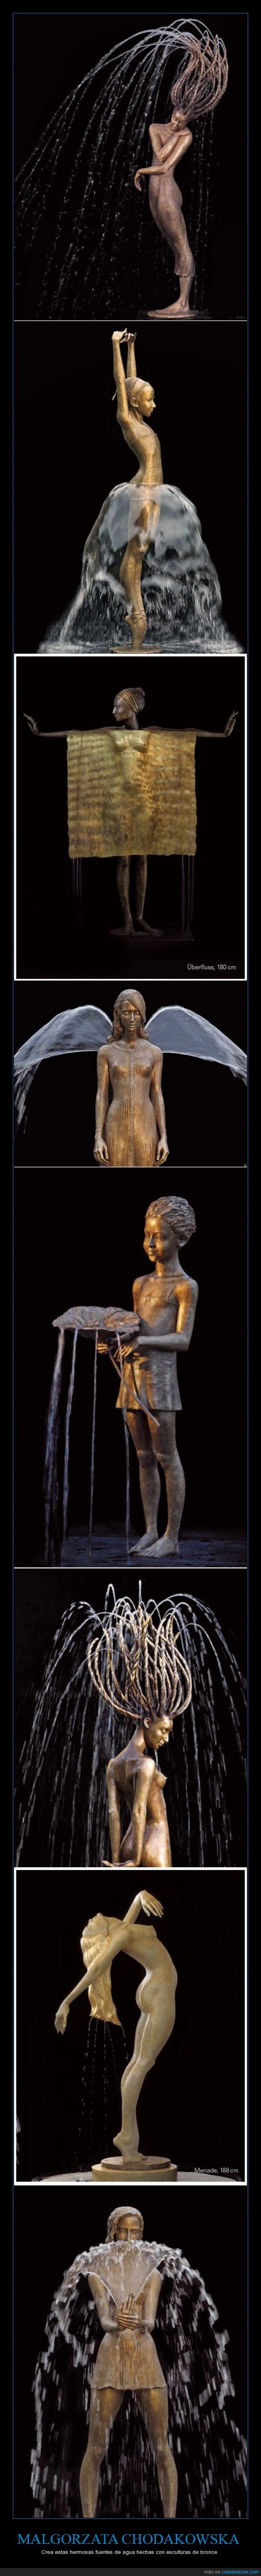 Malgorzata Chodakowska,Polonia. fuentes de agua,esculturas de bronce,increibles,hermosas